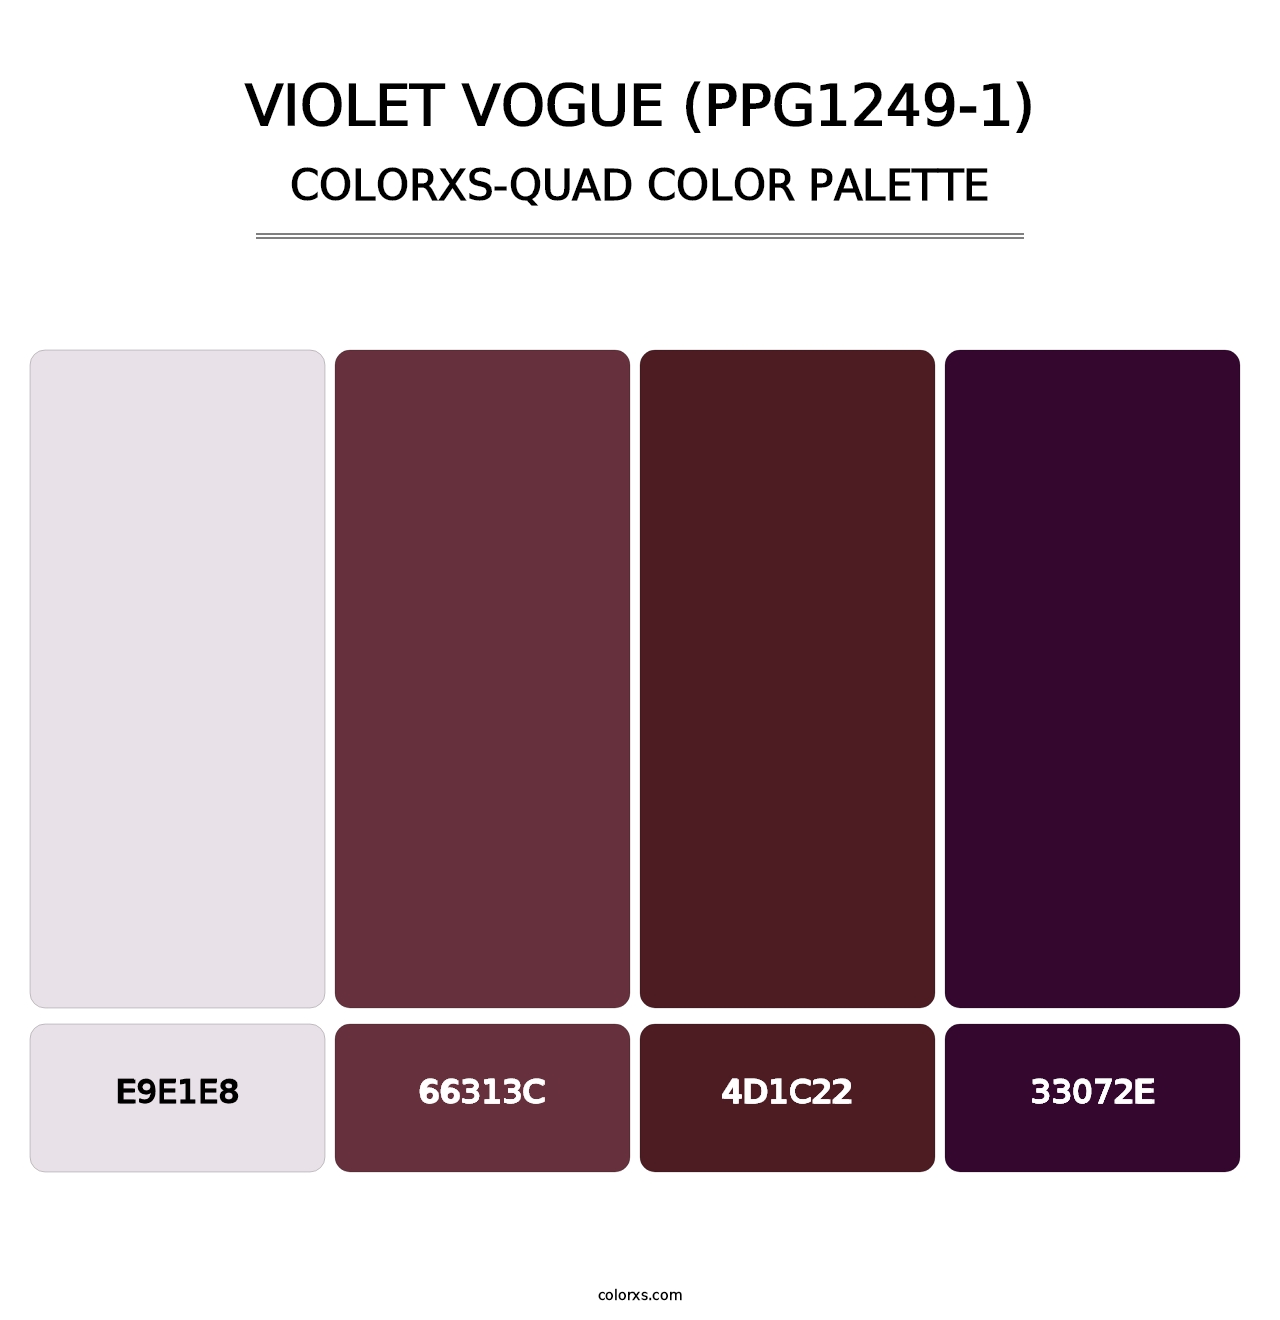 Violet Vogue (PPG1249-1) - Colorxs Quad Palette